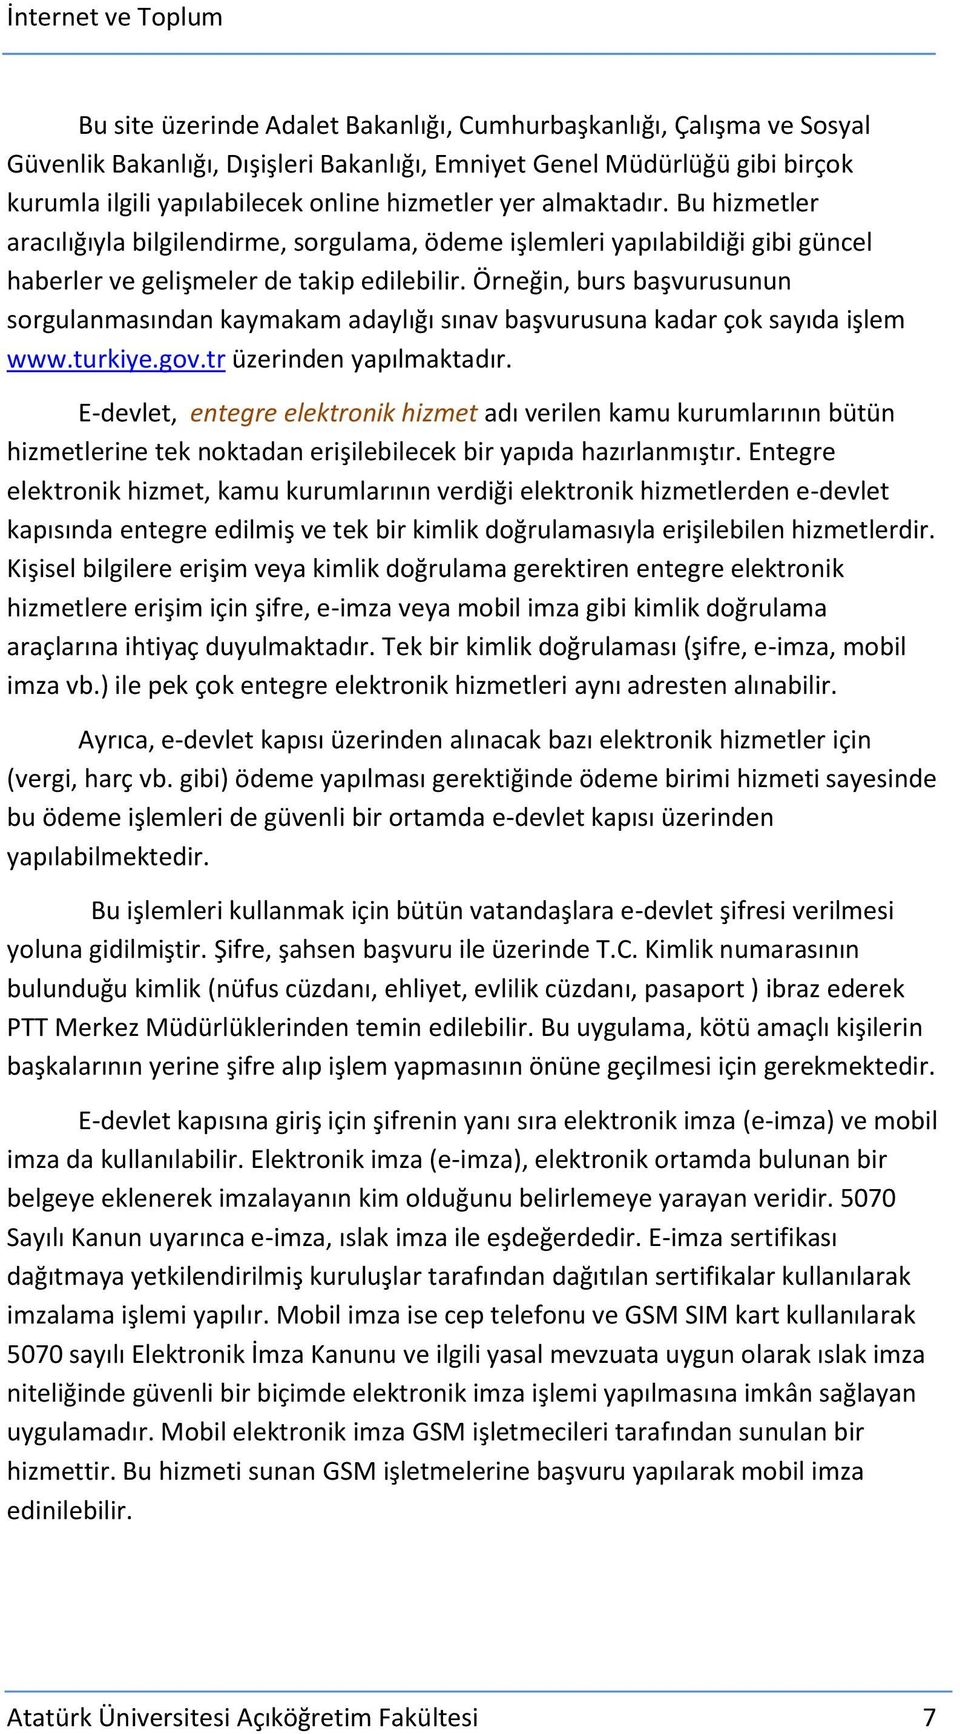 Örneğin, burs başvurusunun sorgulanmasından kaymakam adaylığı sınav başvurusuna kadar çok sayıda işlem www.turkiye.gov.tr üzerinden yapılmaktadır.